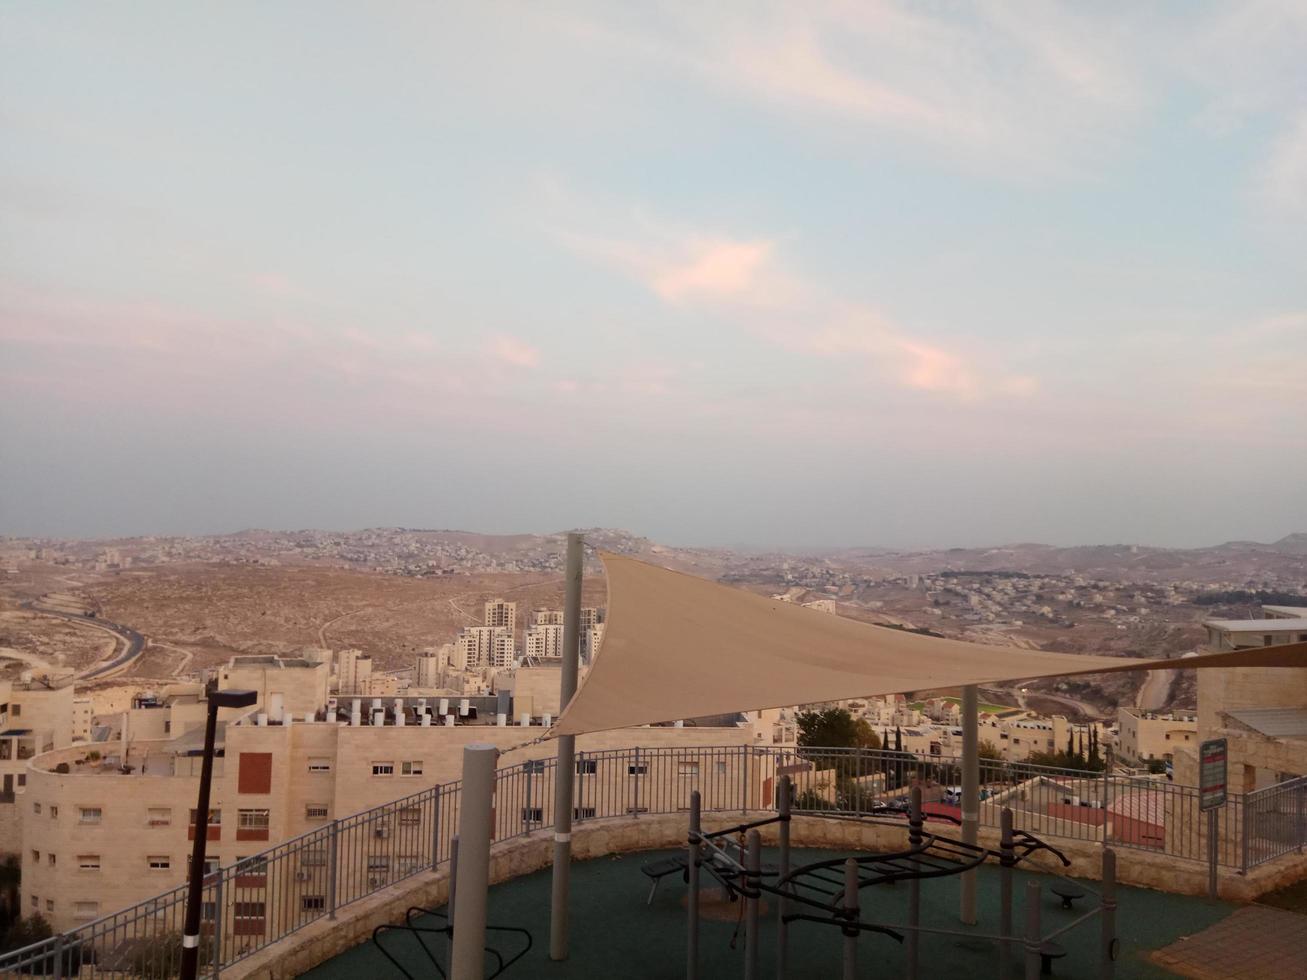 erstaunlicher sonnenuntergang in israel blick auf das heilige land foto